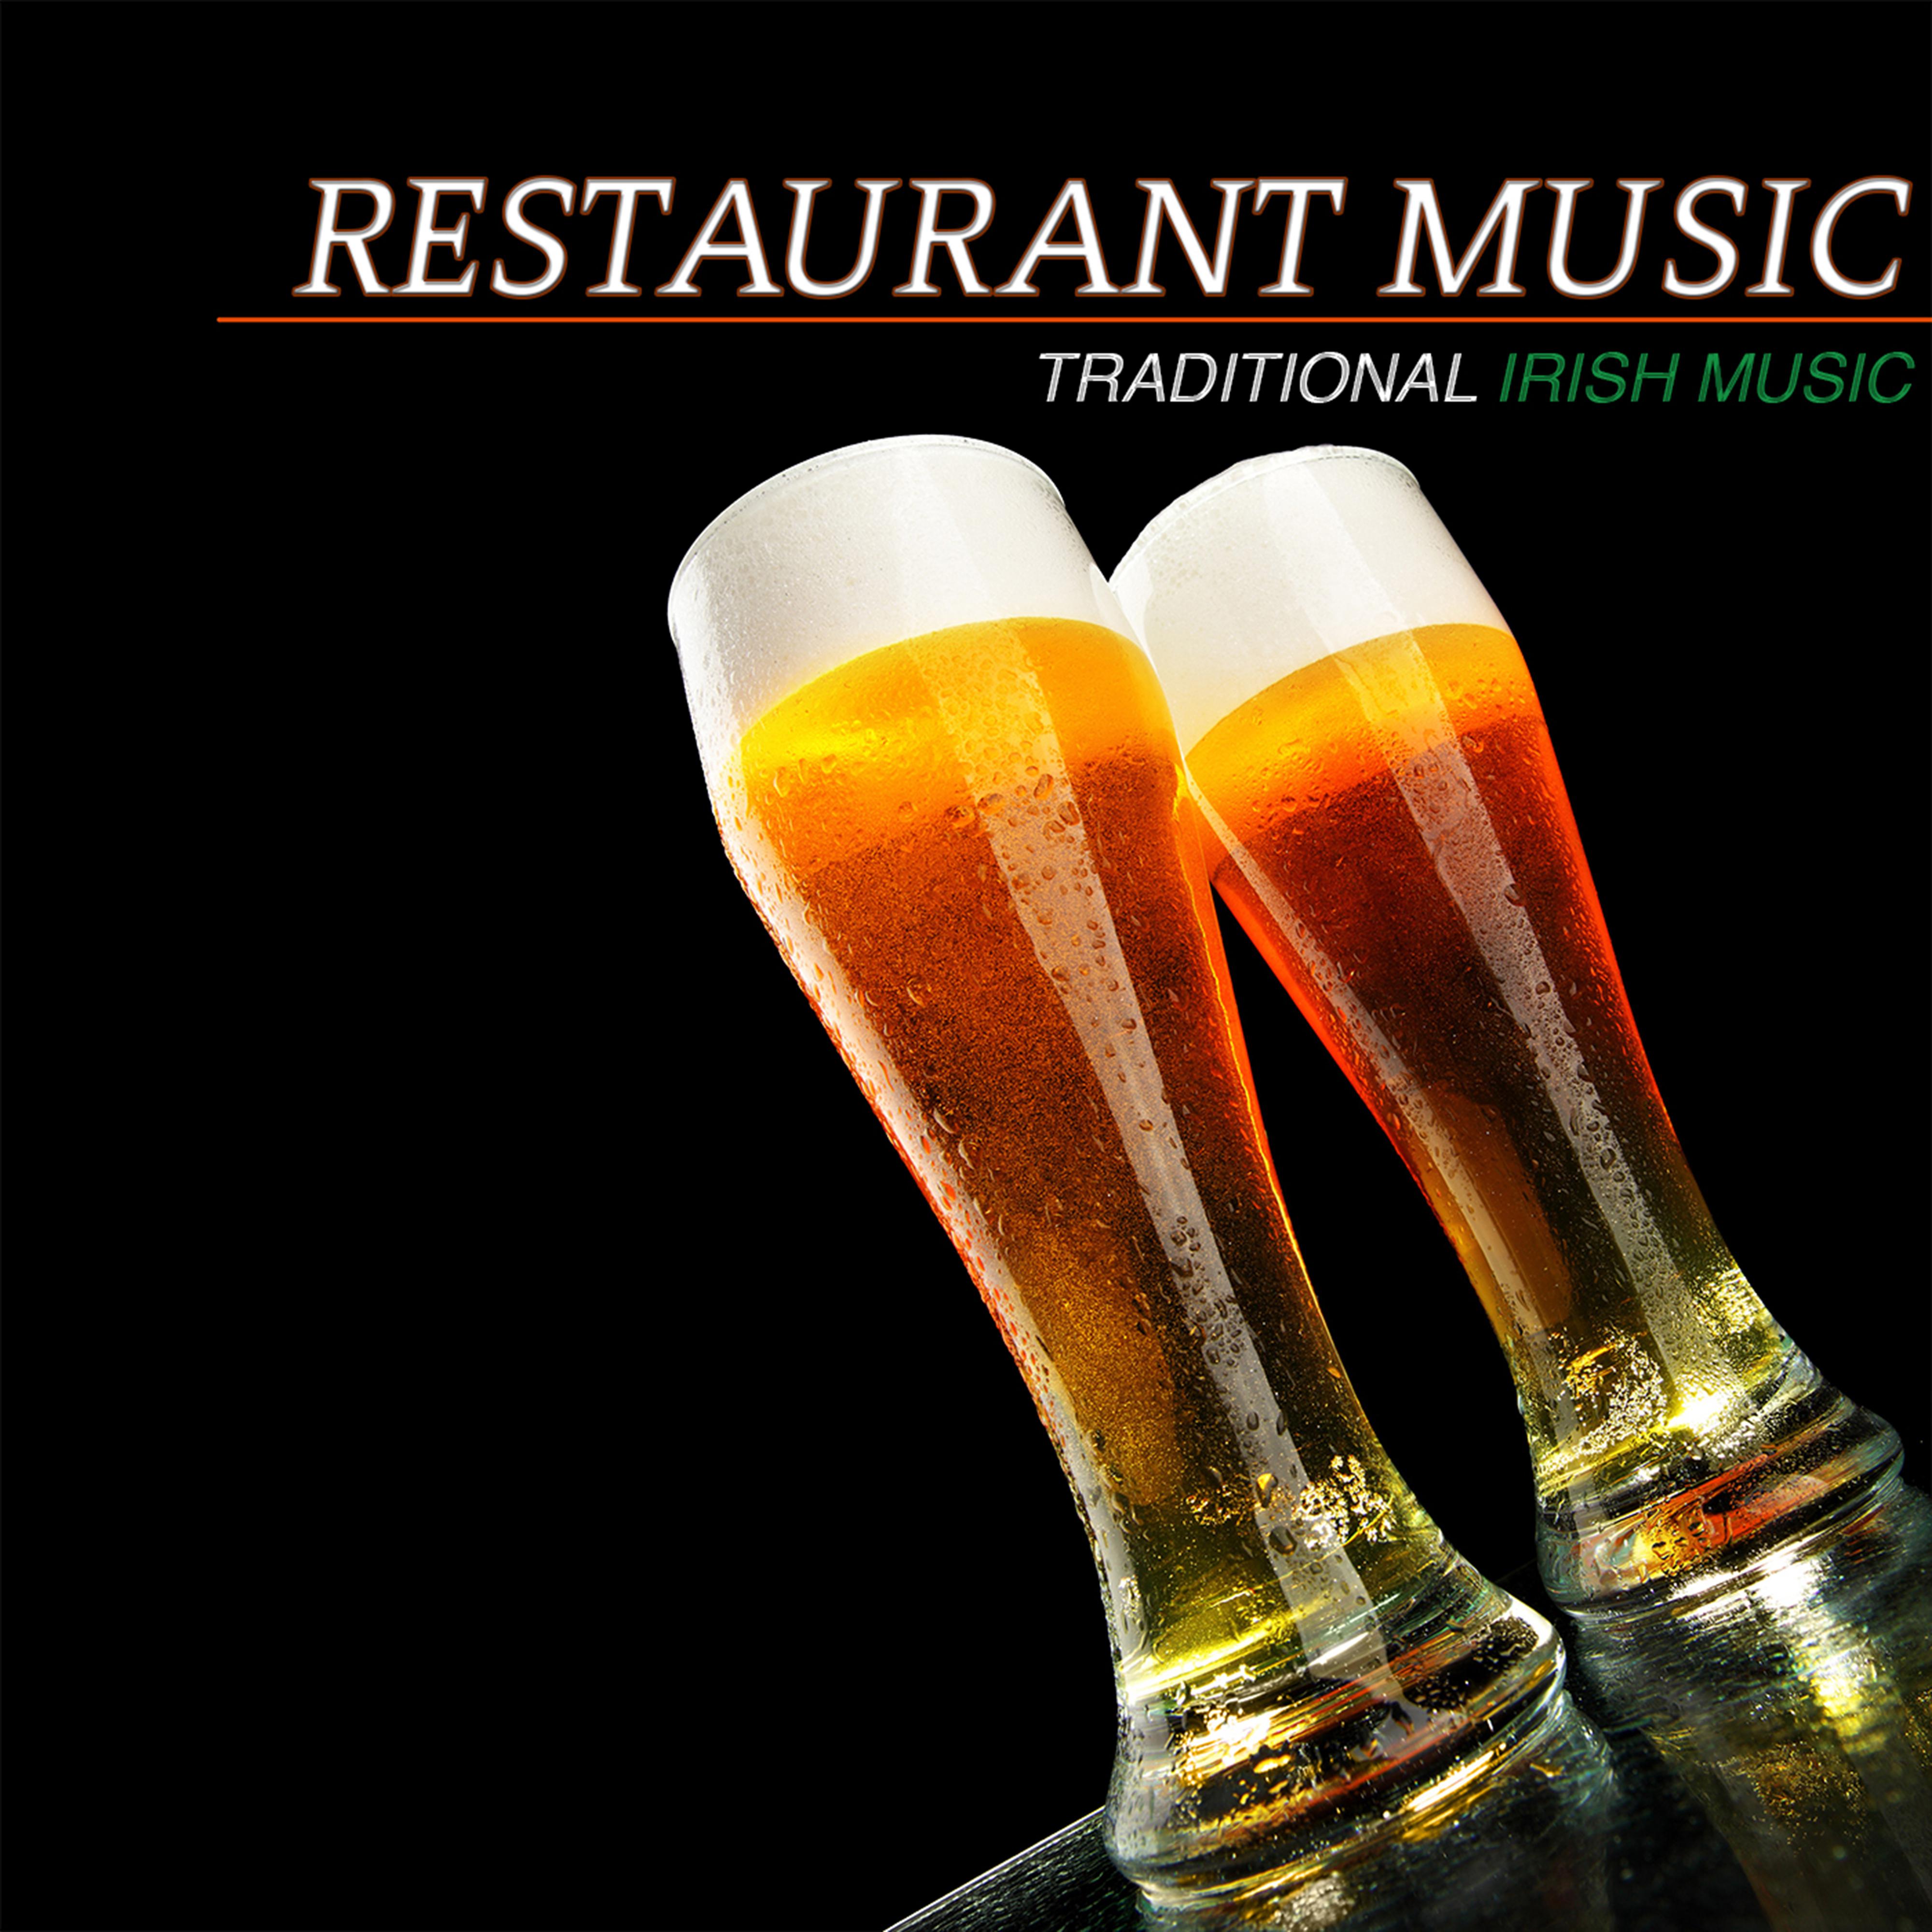 Restaurant Music: Traditional Irish Music & Irish Pub Songs (Best Instrumental Music and Restaurant Background Music)